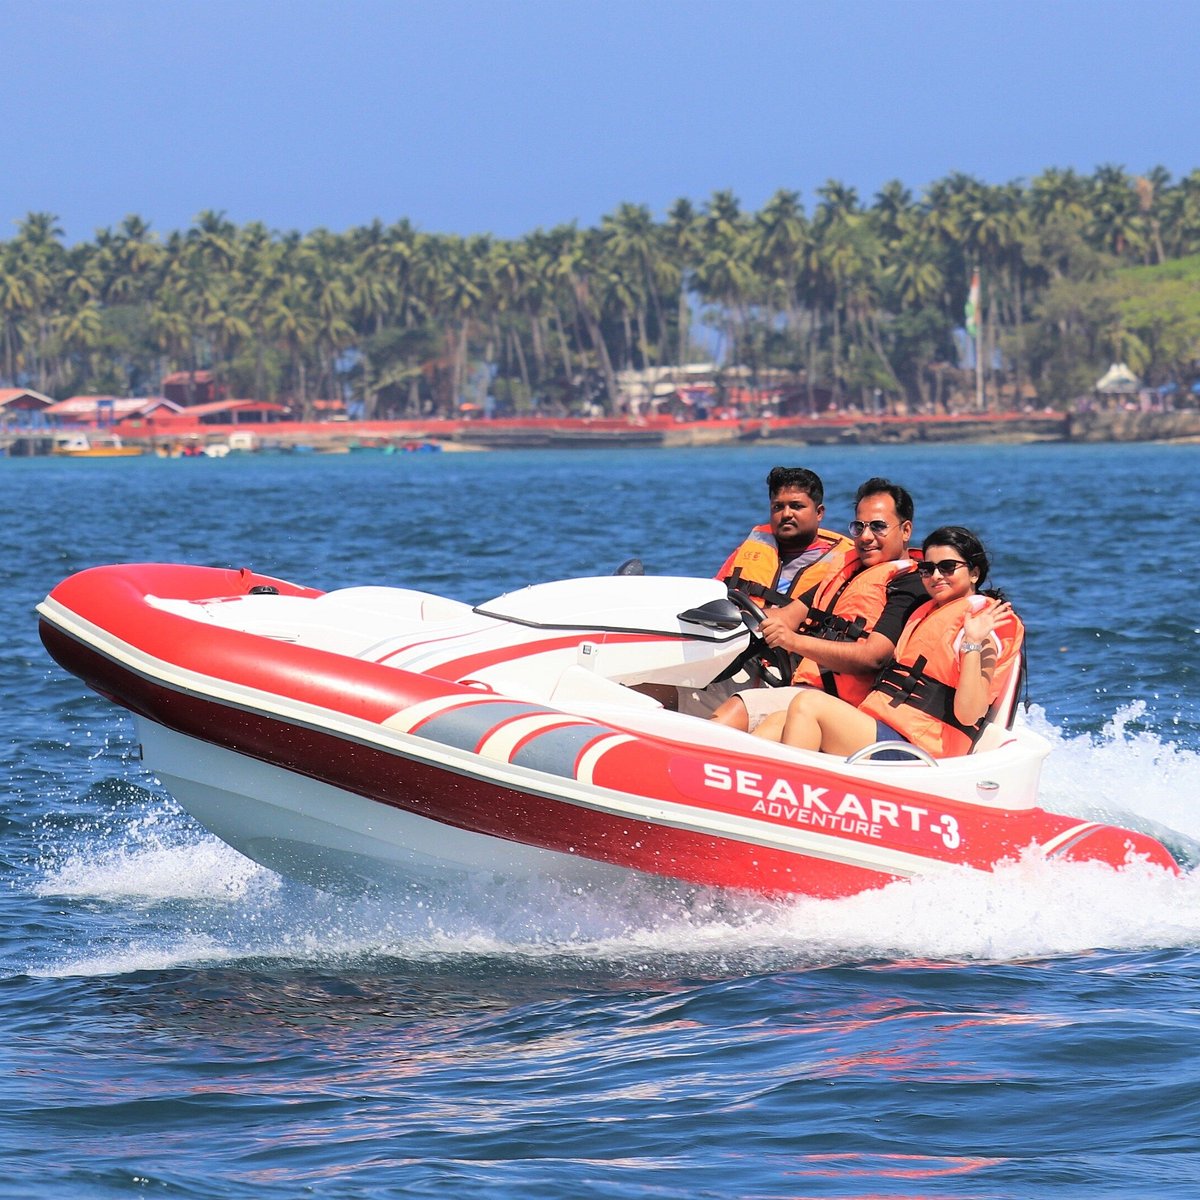 Sea Kart Ride in Andaman